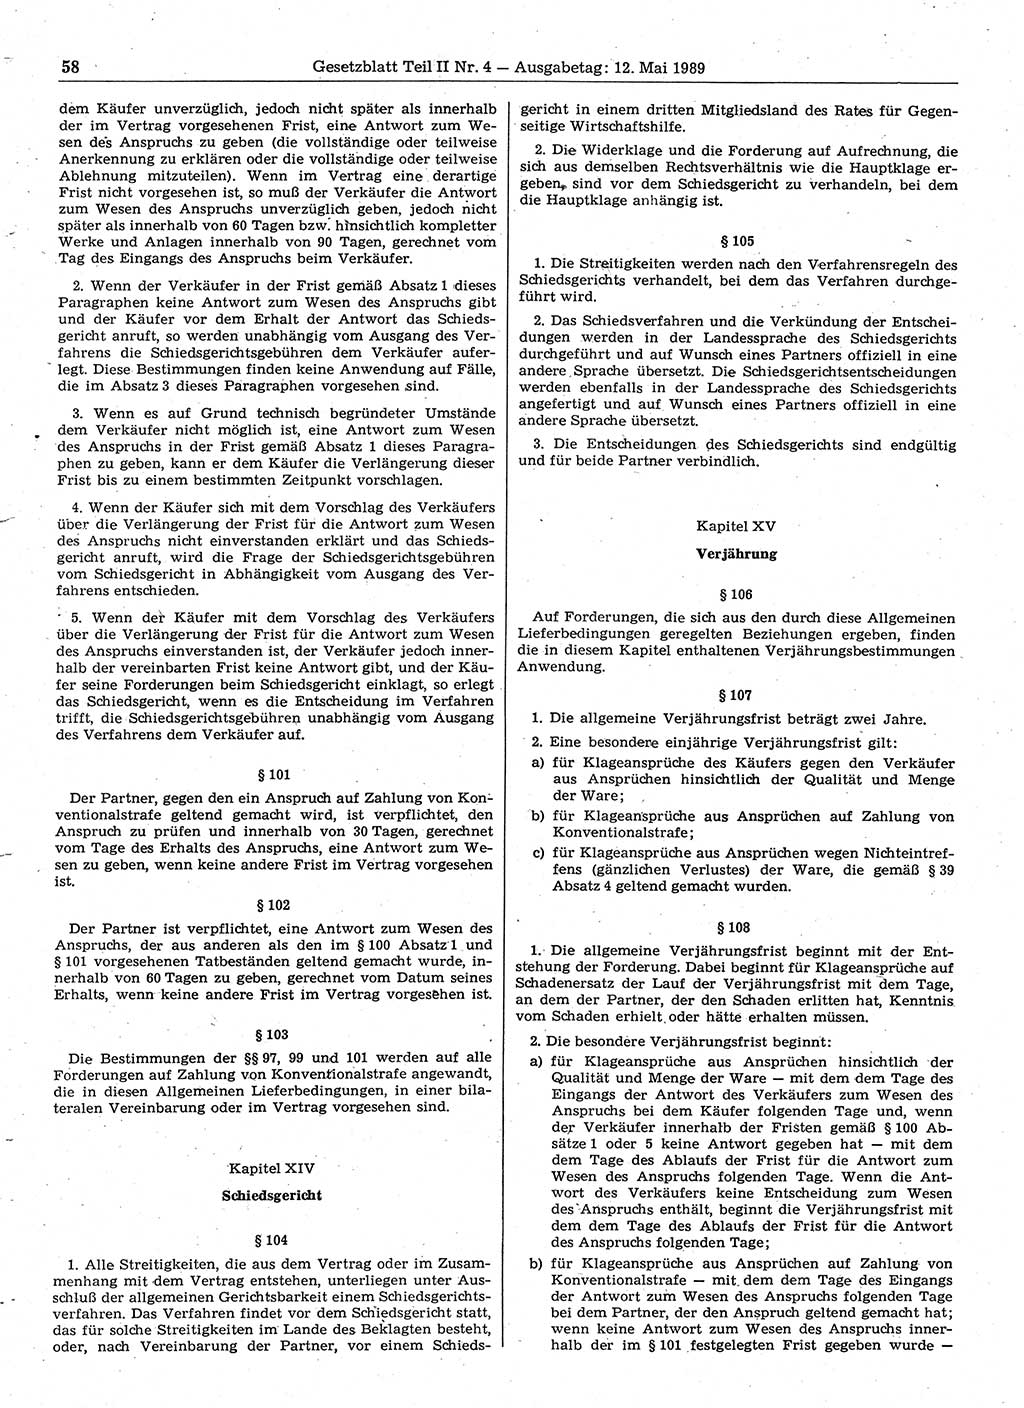 Gesetzblatt (GBl.) der Deutschen Demokratischen Republik (DDR) Teil ⅠⅠ 1989, Seite 58 (GBl. DDR ⅠⅠ 1989, S. 58)